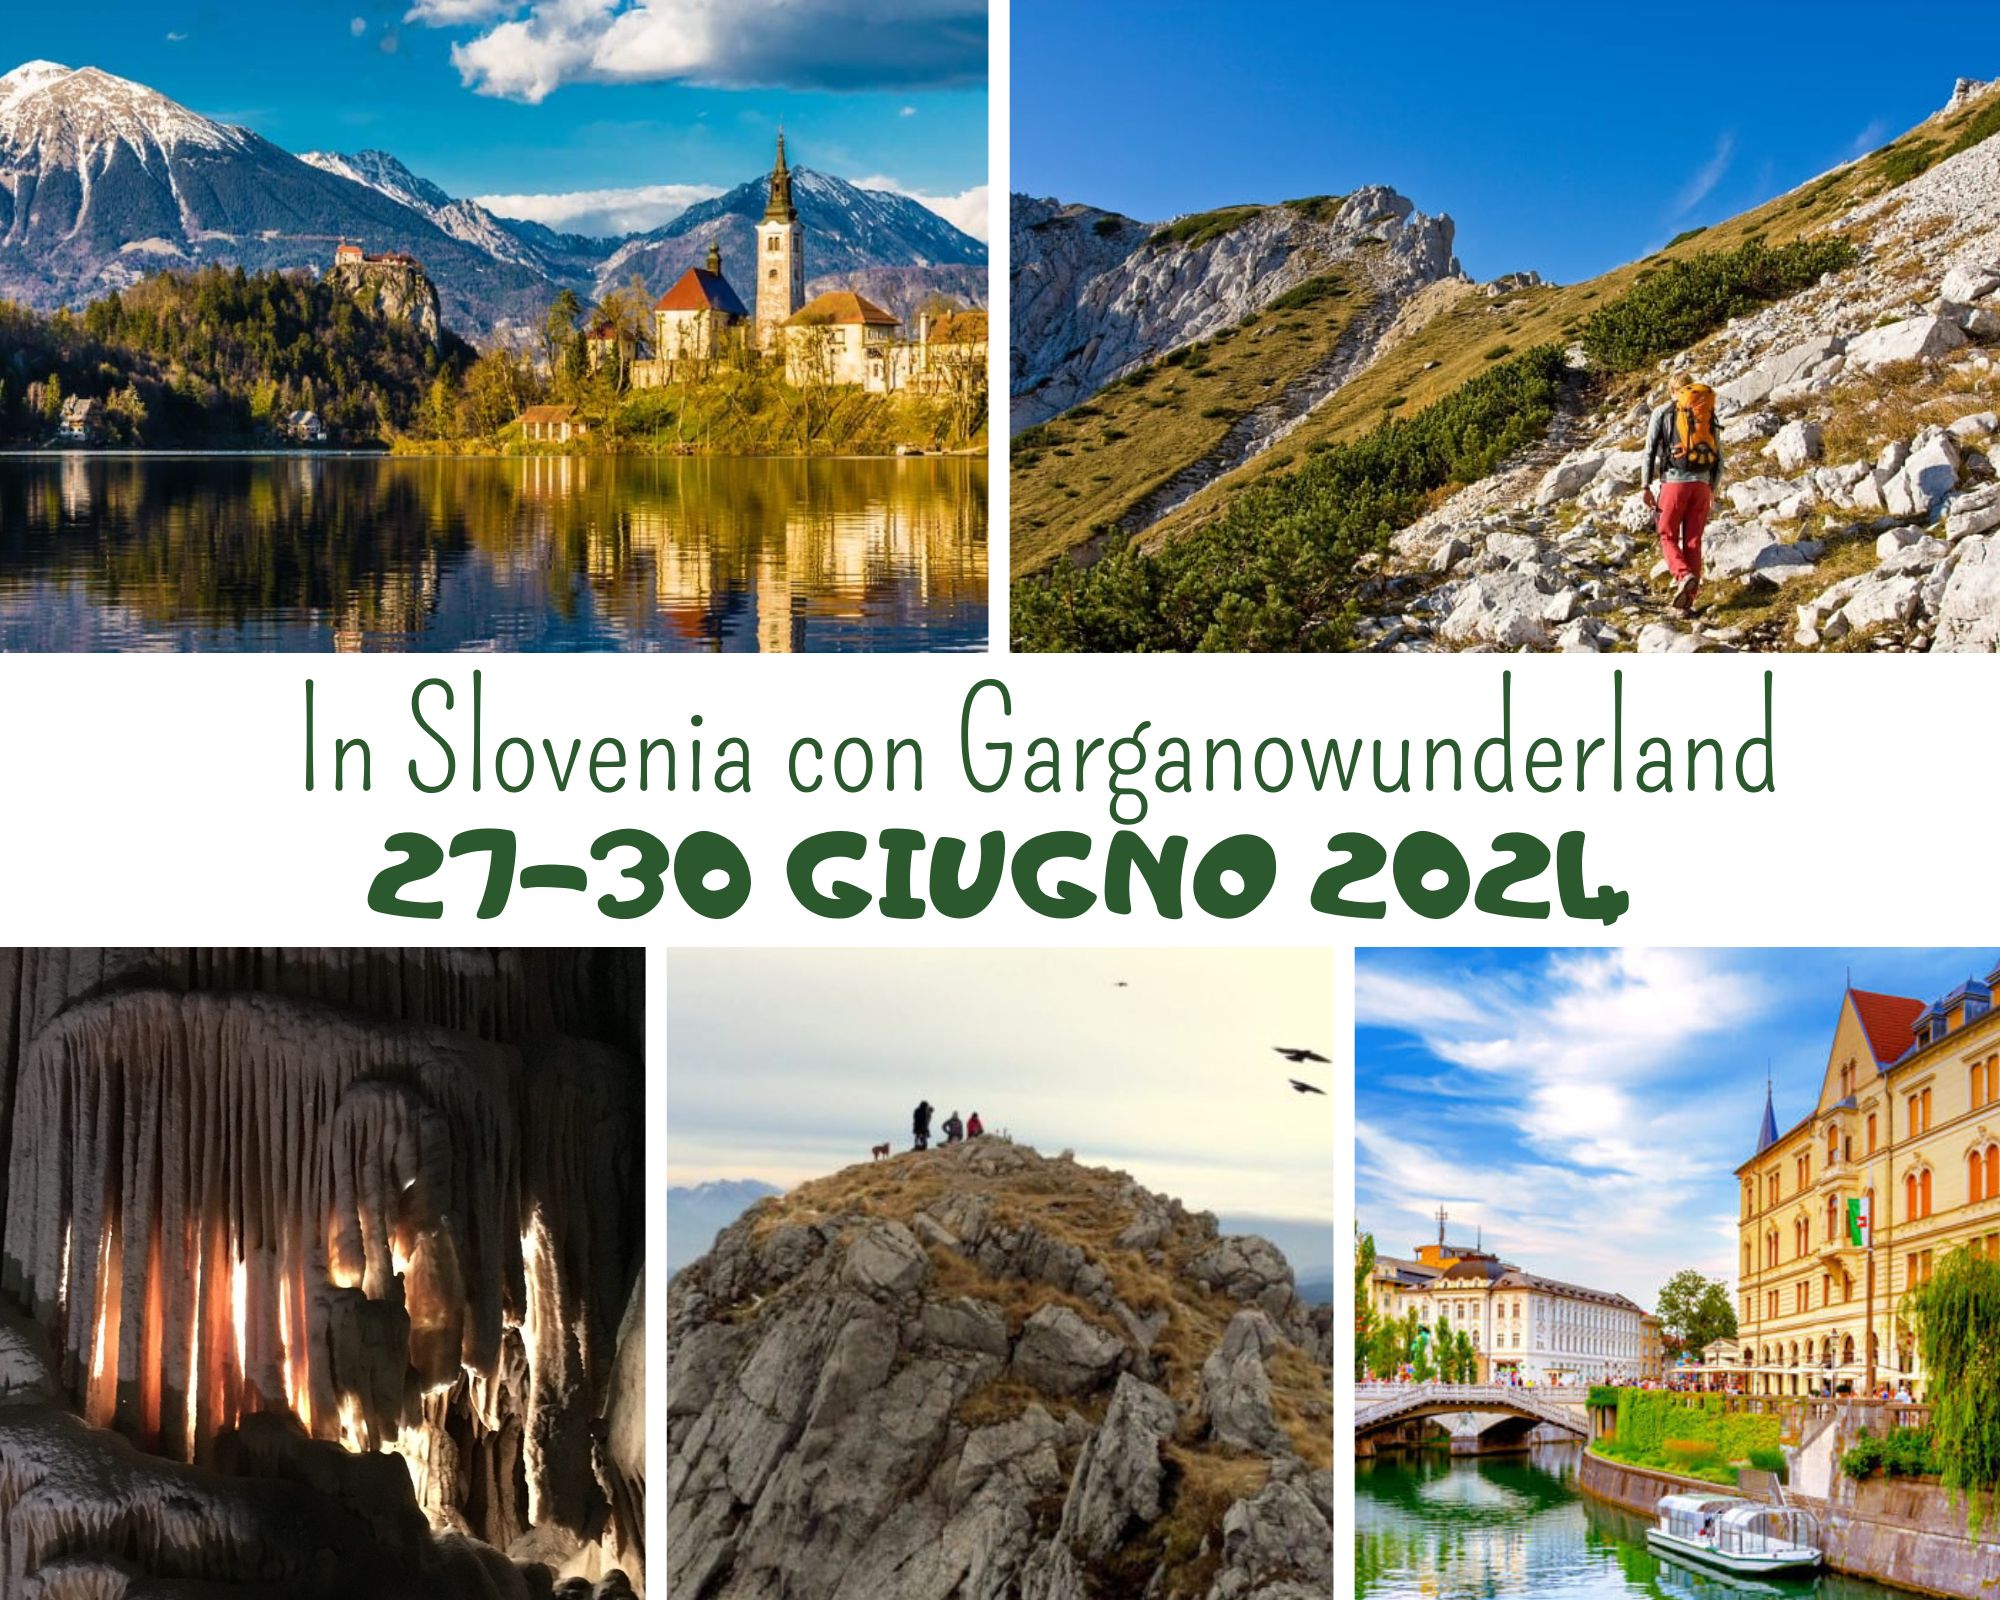 In Slovenia con Garganowunderland, esperienza tra le meraviglie del paese del Carsismo.